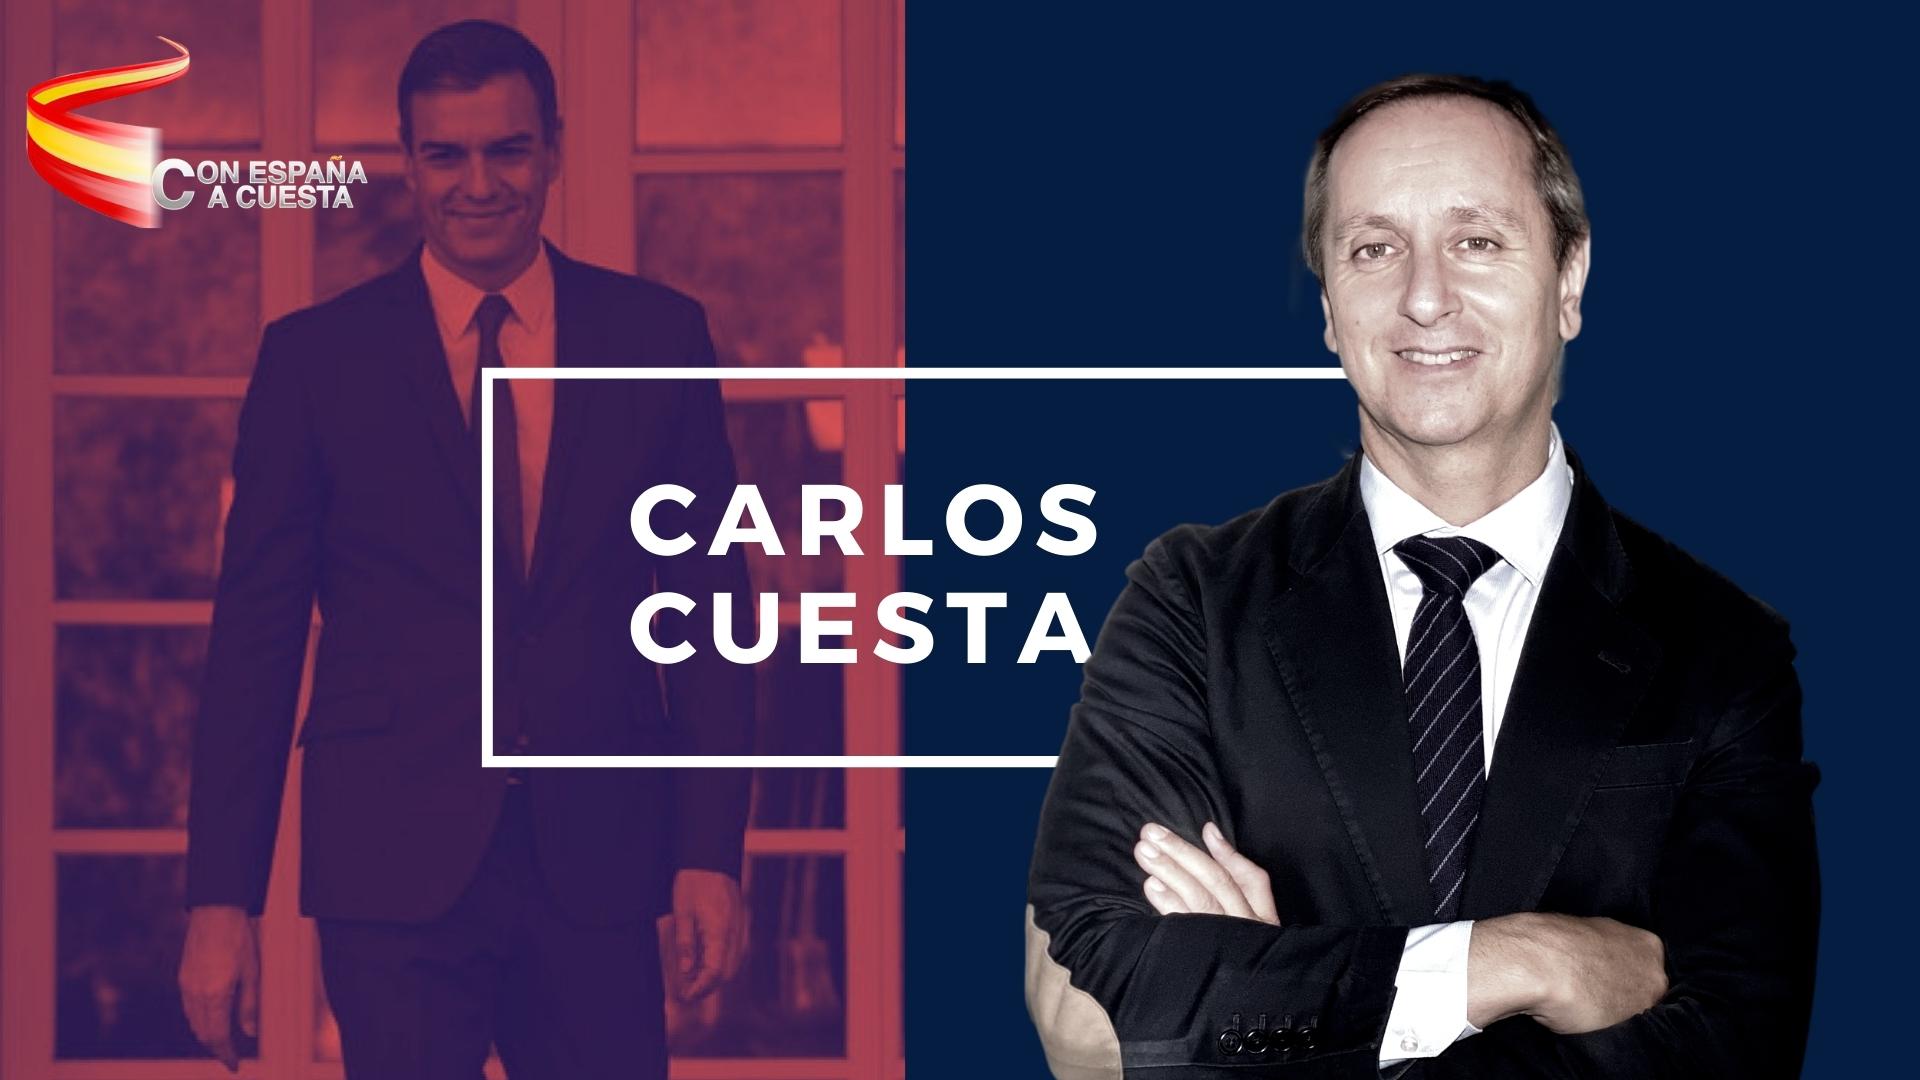 CARLOS CUESTA